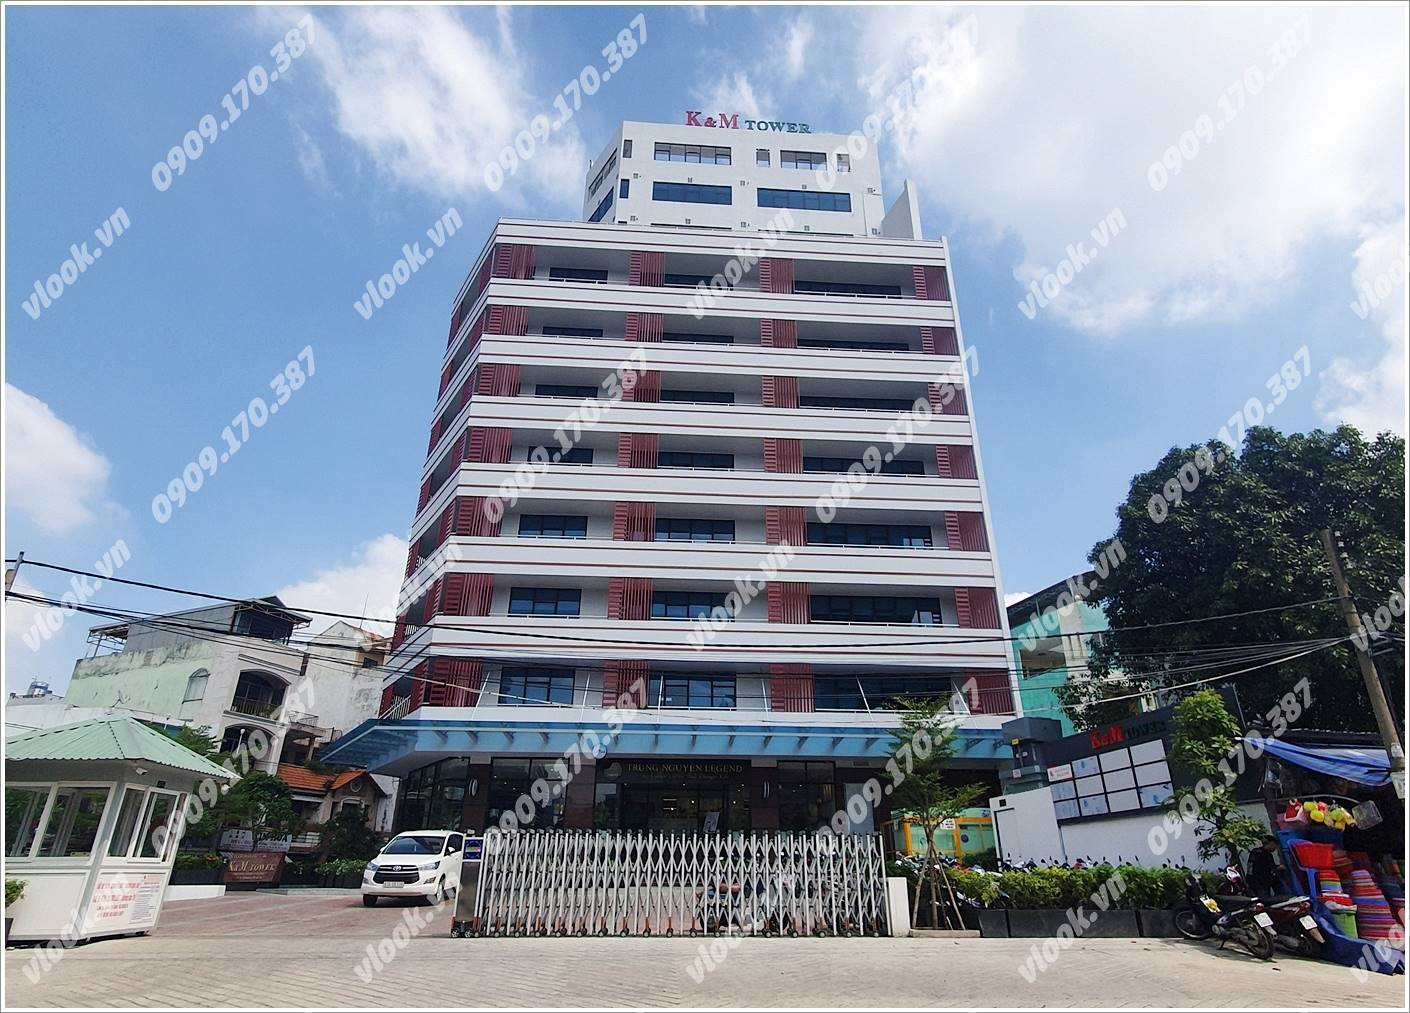 Cao ốc cho thuê văn phòng K&M Tower Ung Văn Khiêm Quận Bình Thạnh - vlook.vn